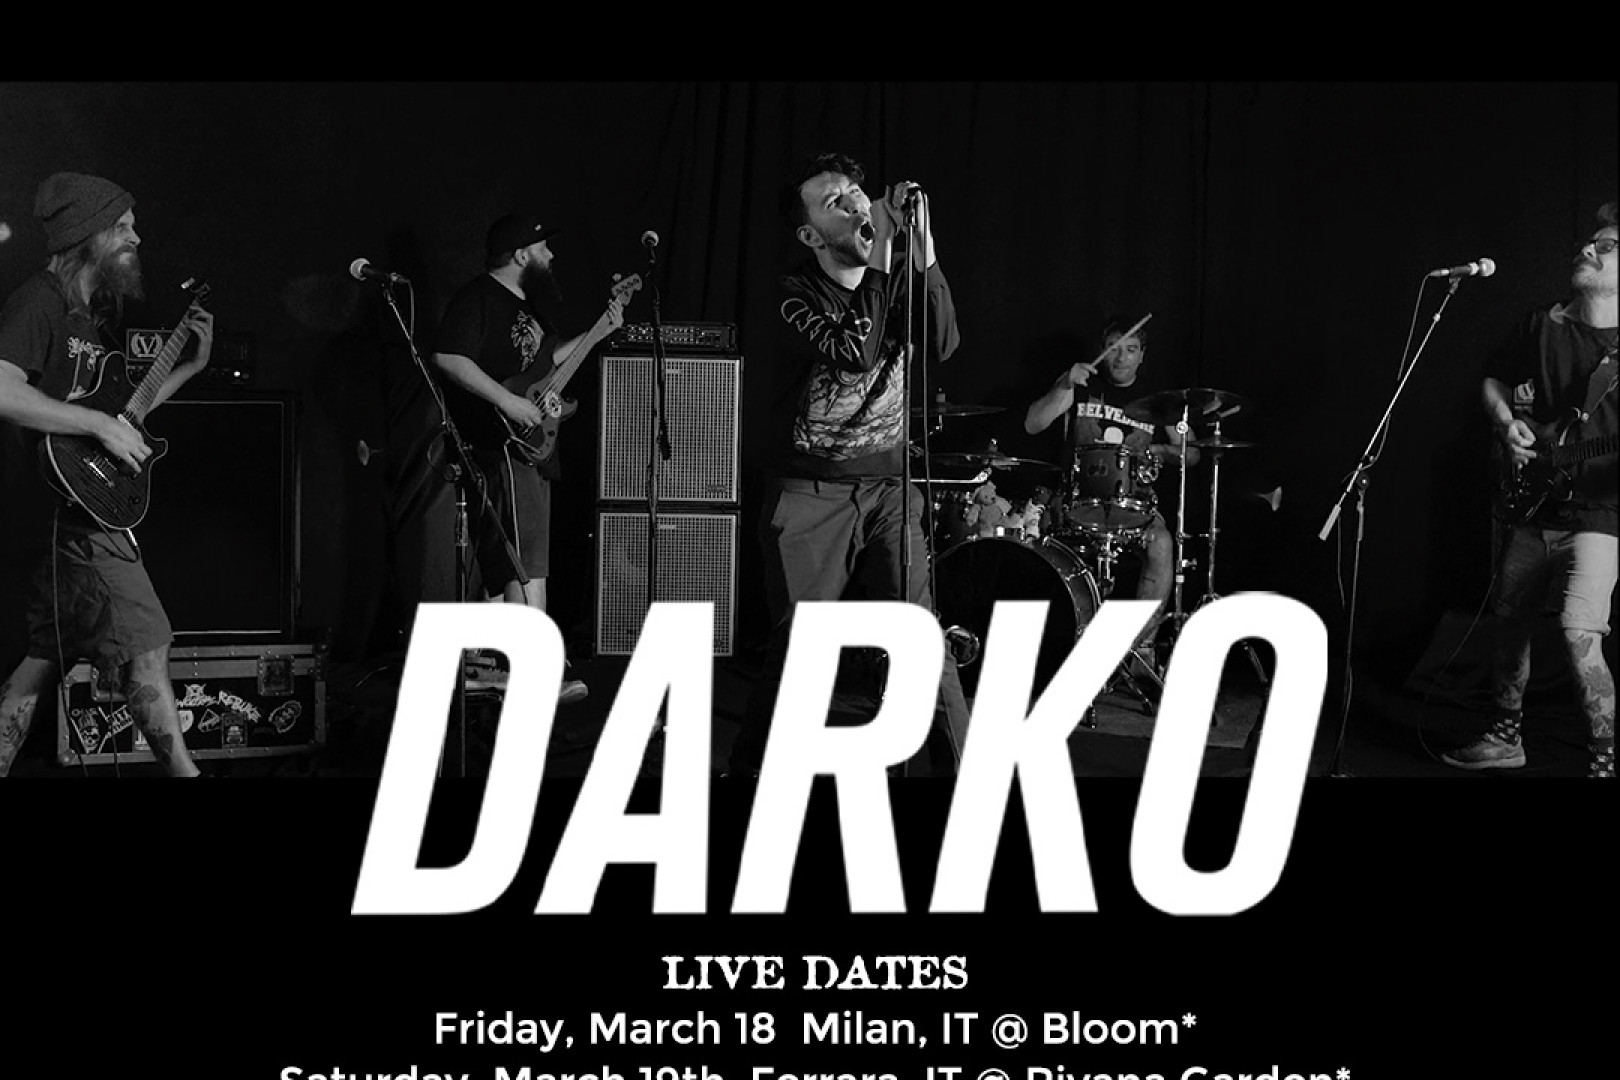 Darko release new single